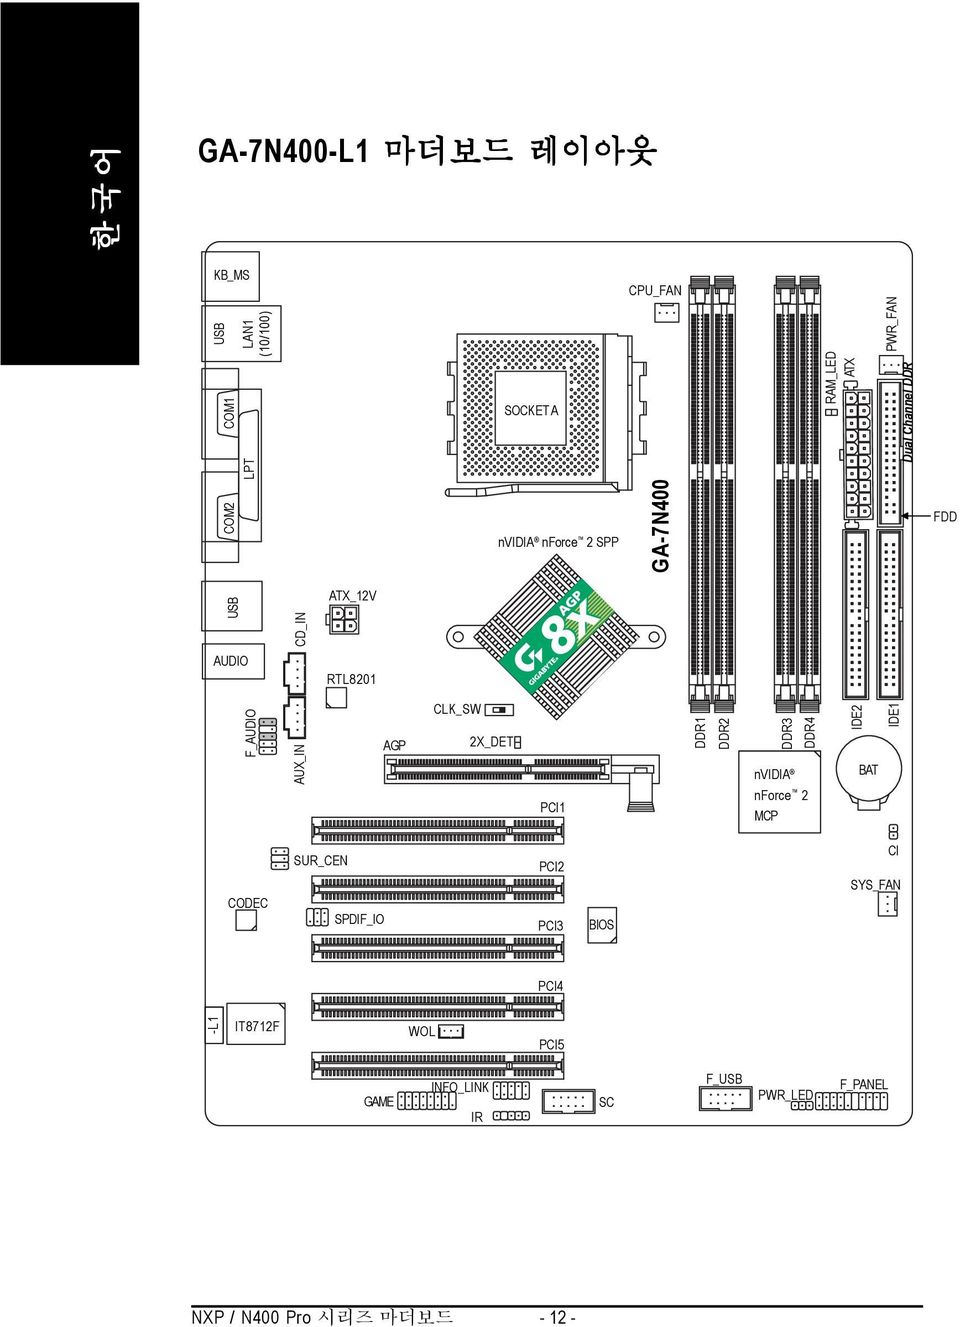 2X_DET PCI1 DDR1 DDR2 DDR3 DDR4 nvidia nforce 2 MCP IDE2 BAT IDE1 CODEC SUR_CEN SPDIF_IO PCI2 PCI3